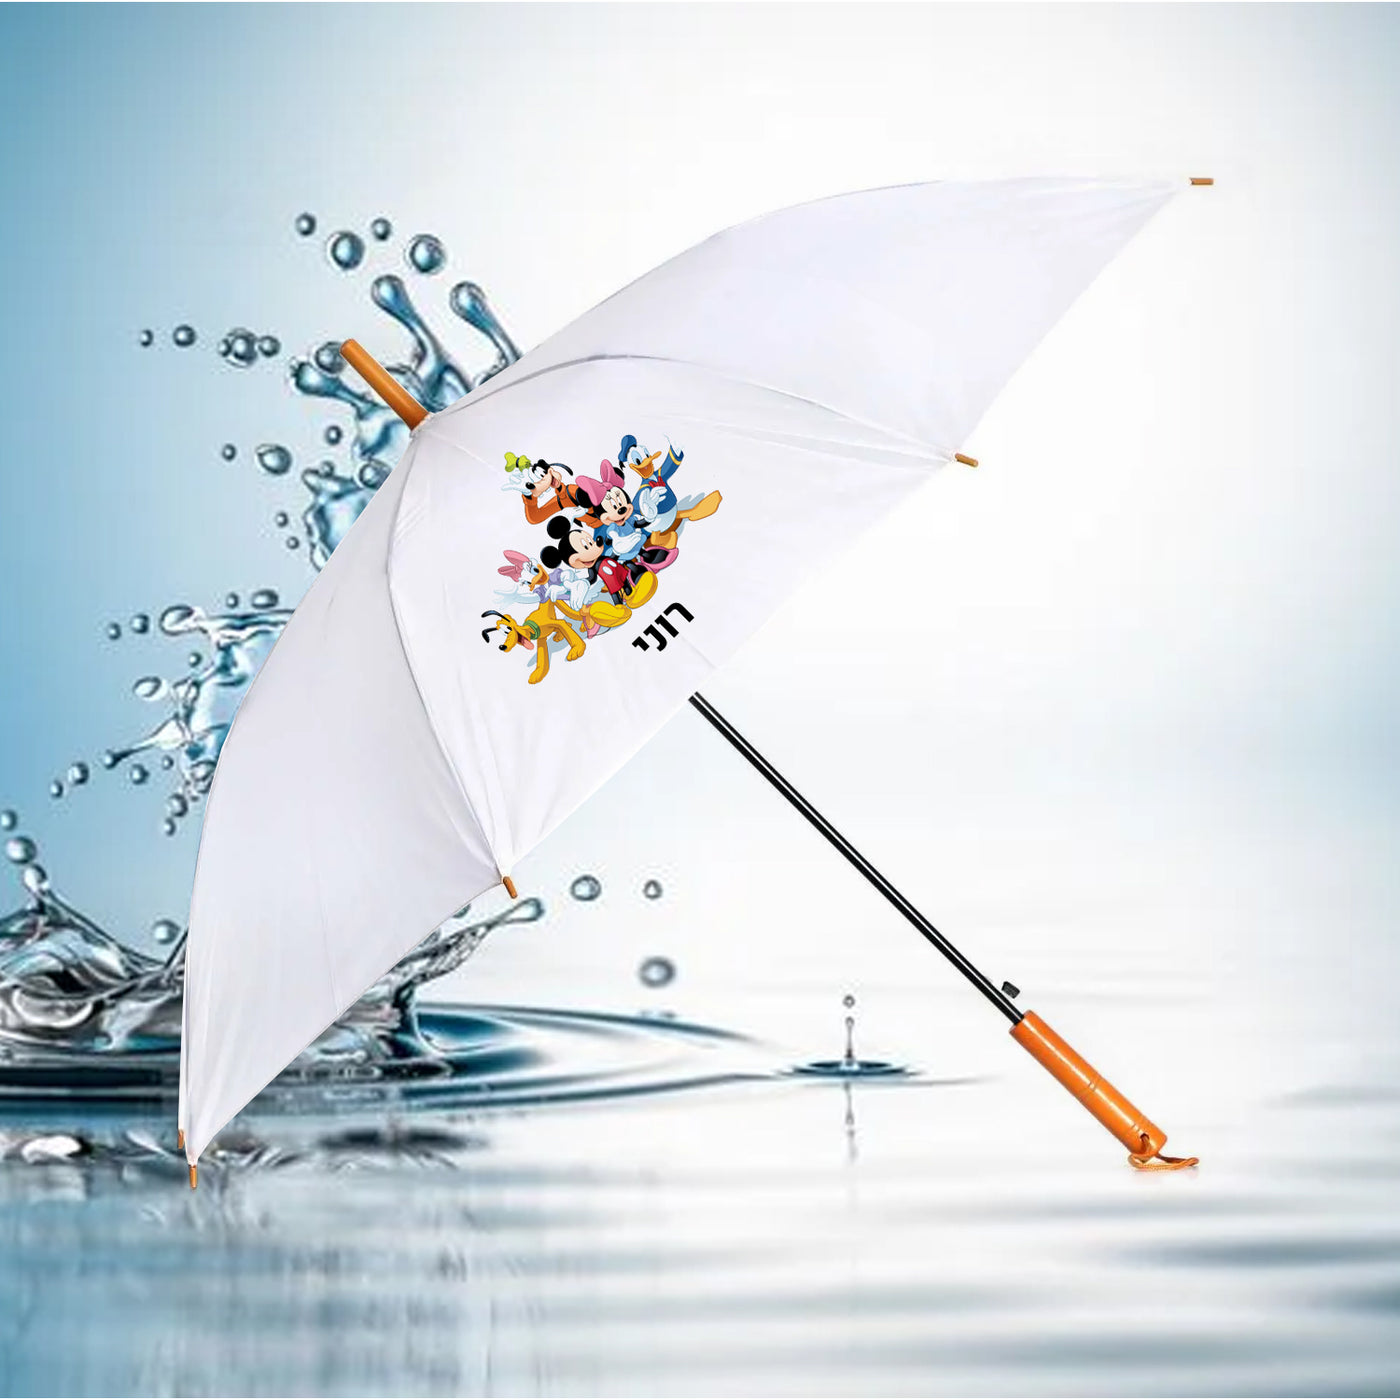 מטרייה מעוצבת עם שם אישי- מיקי מאוס וחברים